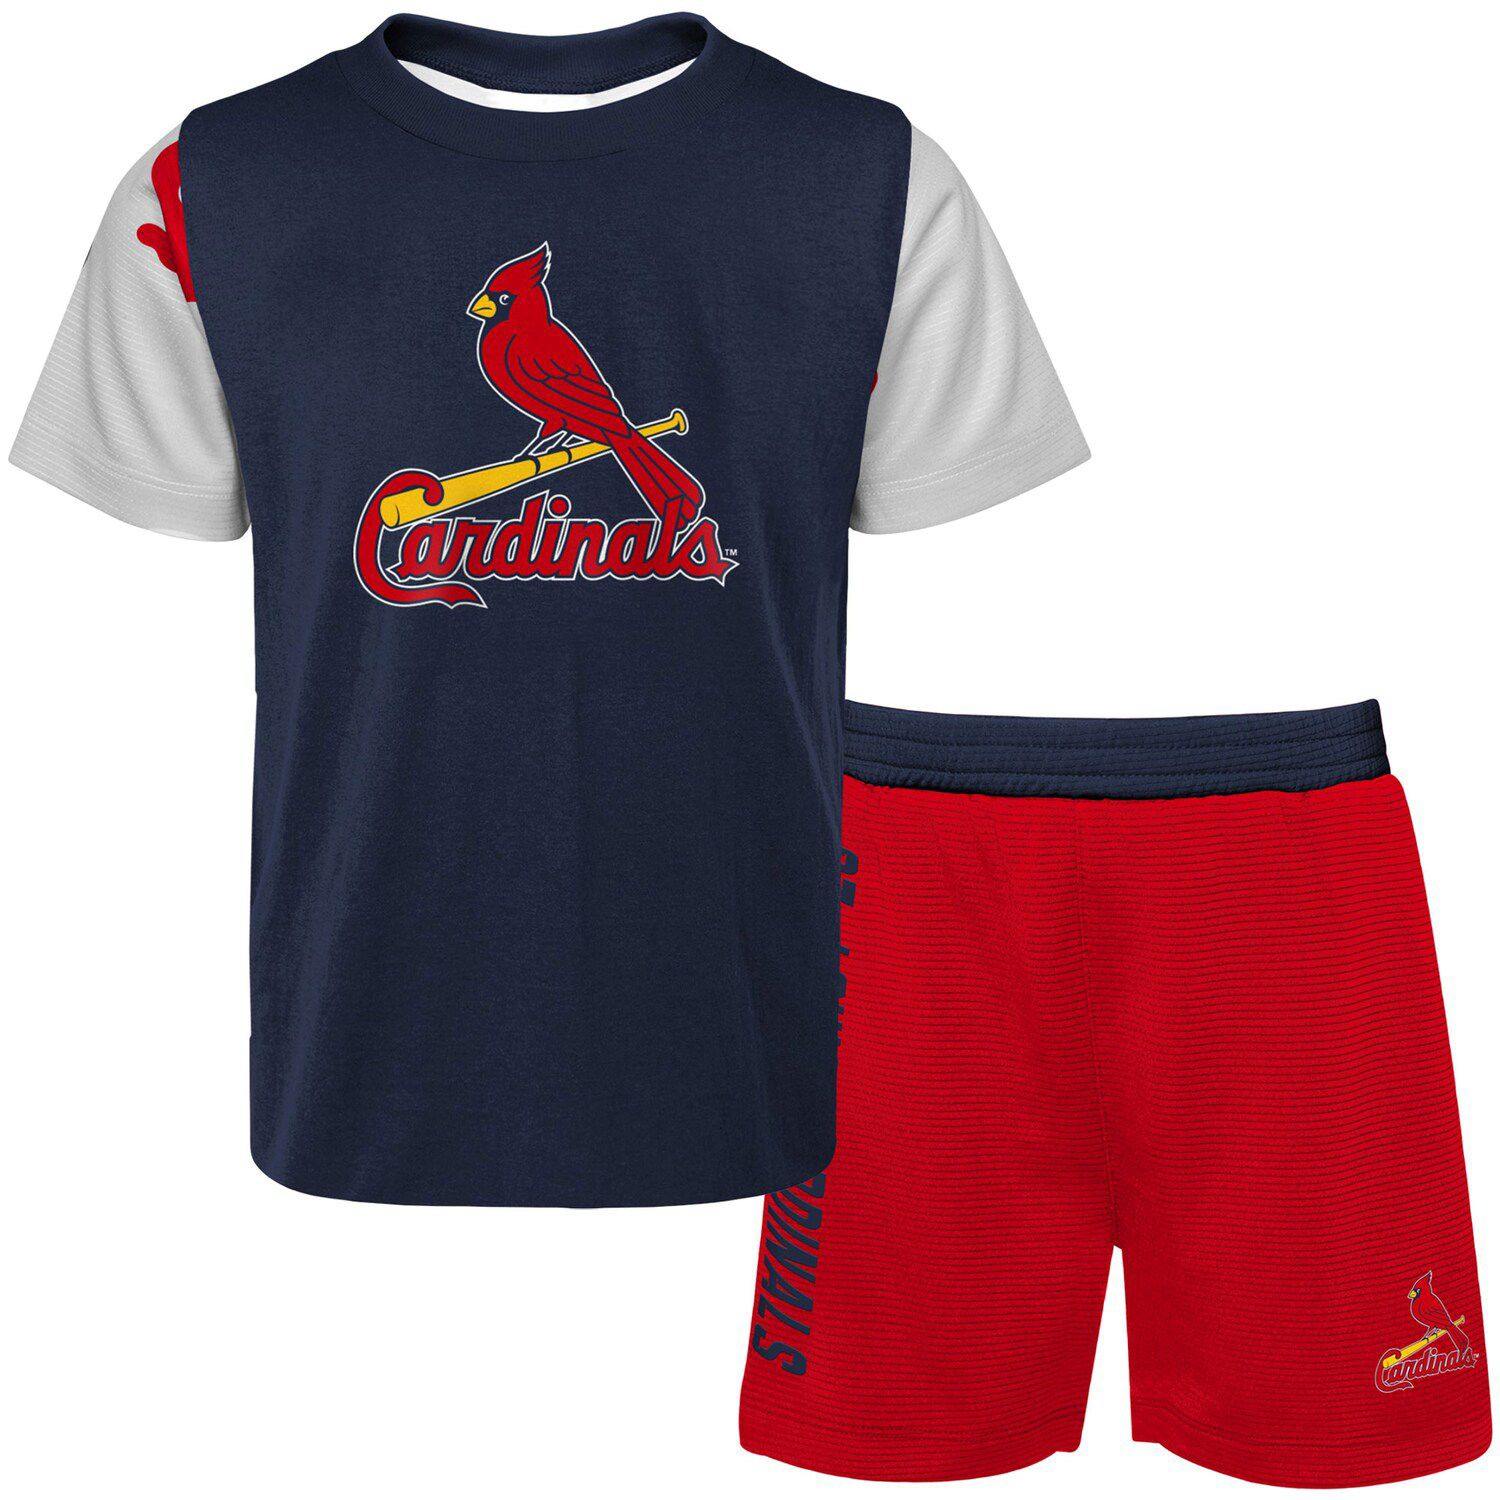 St. Louis Cardinals Infant Little Fan Two-Pack Bodysuit Set - Red